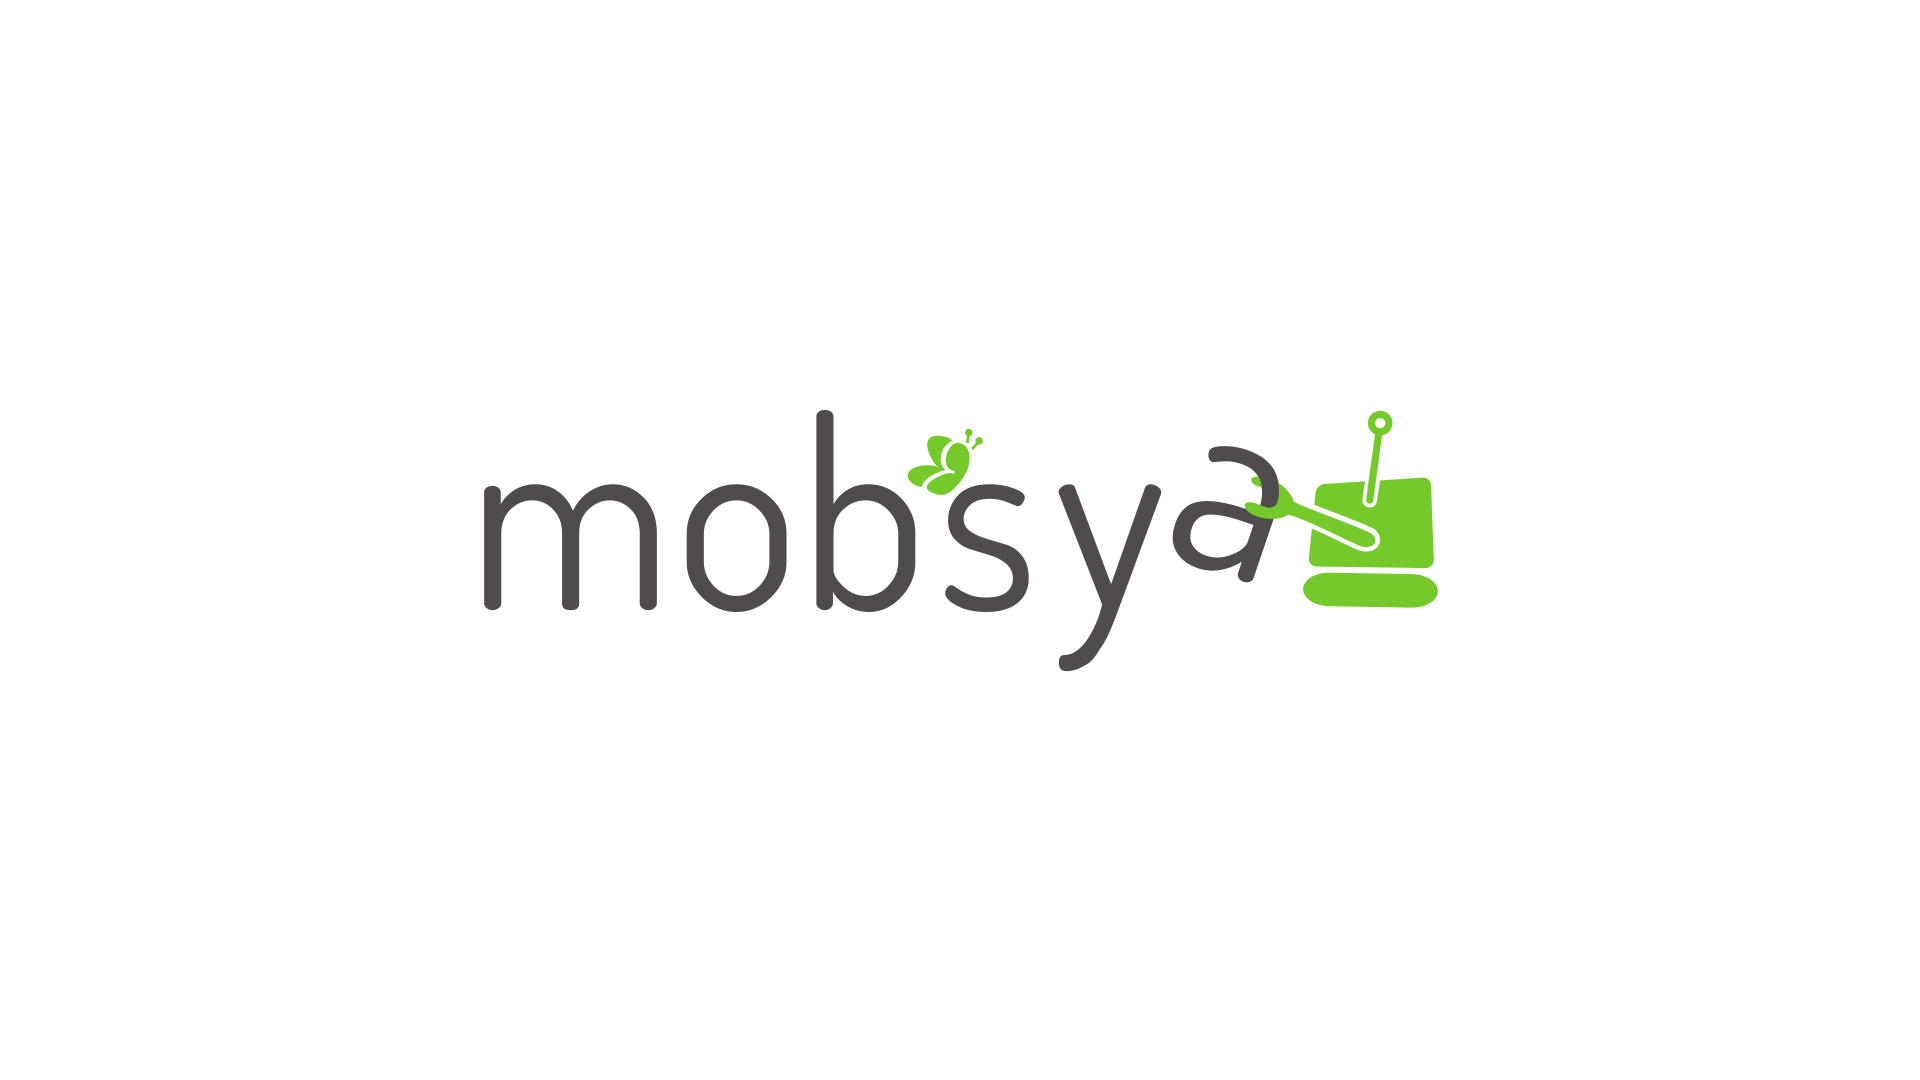 Mobsya